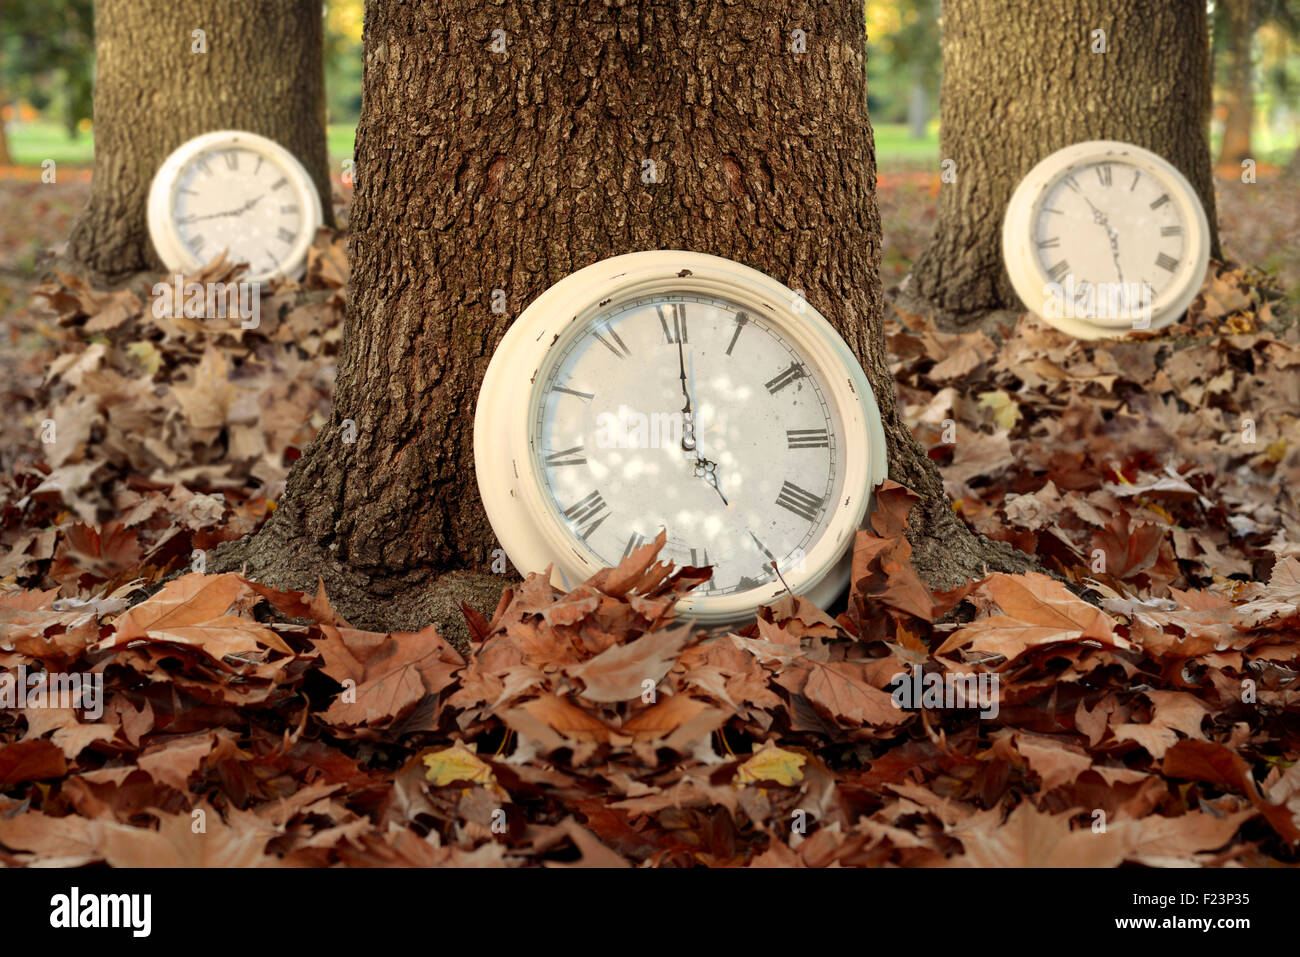 Herbst Zeit Kreativkonzept mit Uhren und Bäume im Herbst Blatt Boden Wald Hintergrund. Ideal für Saison-Kampagne, Bucheinband Stockfoto